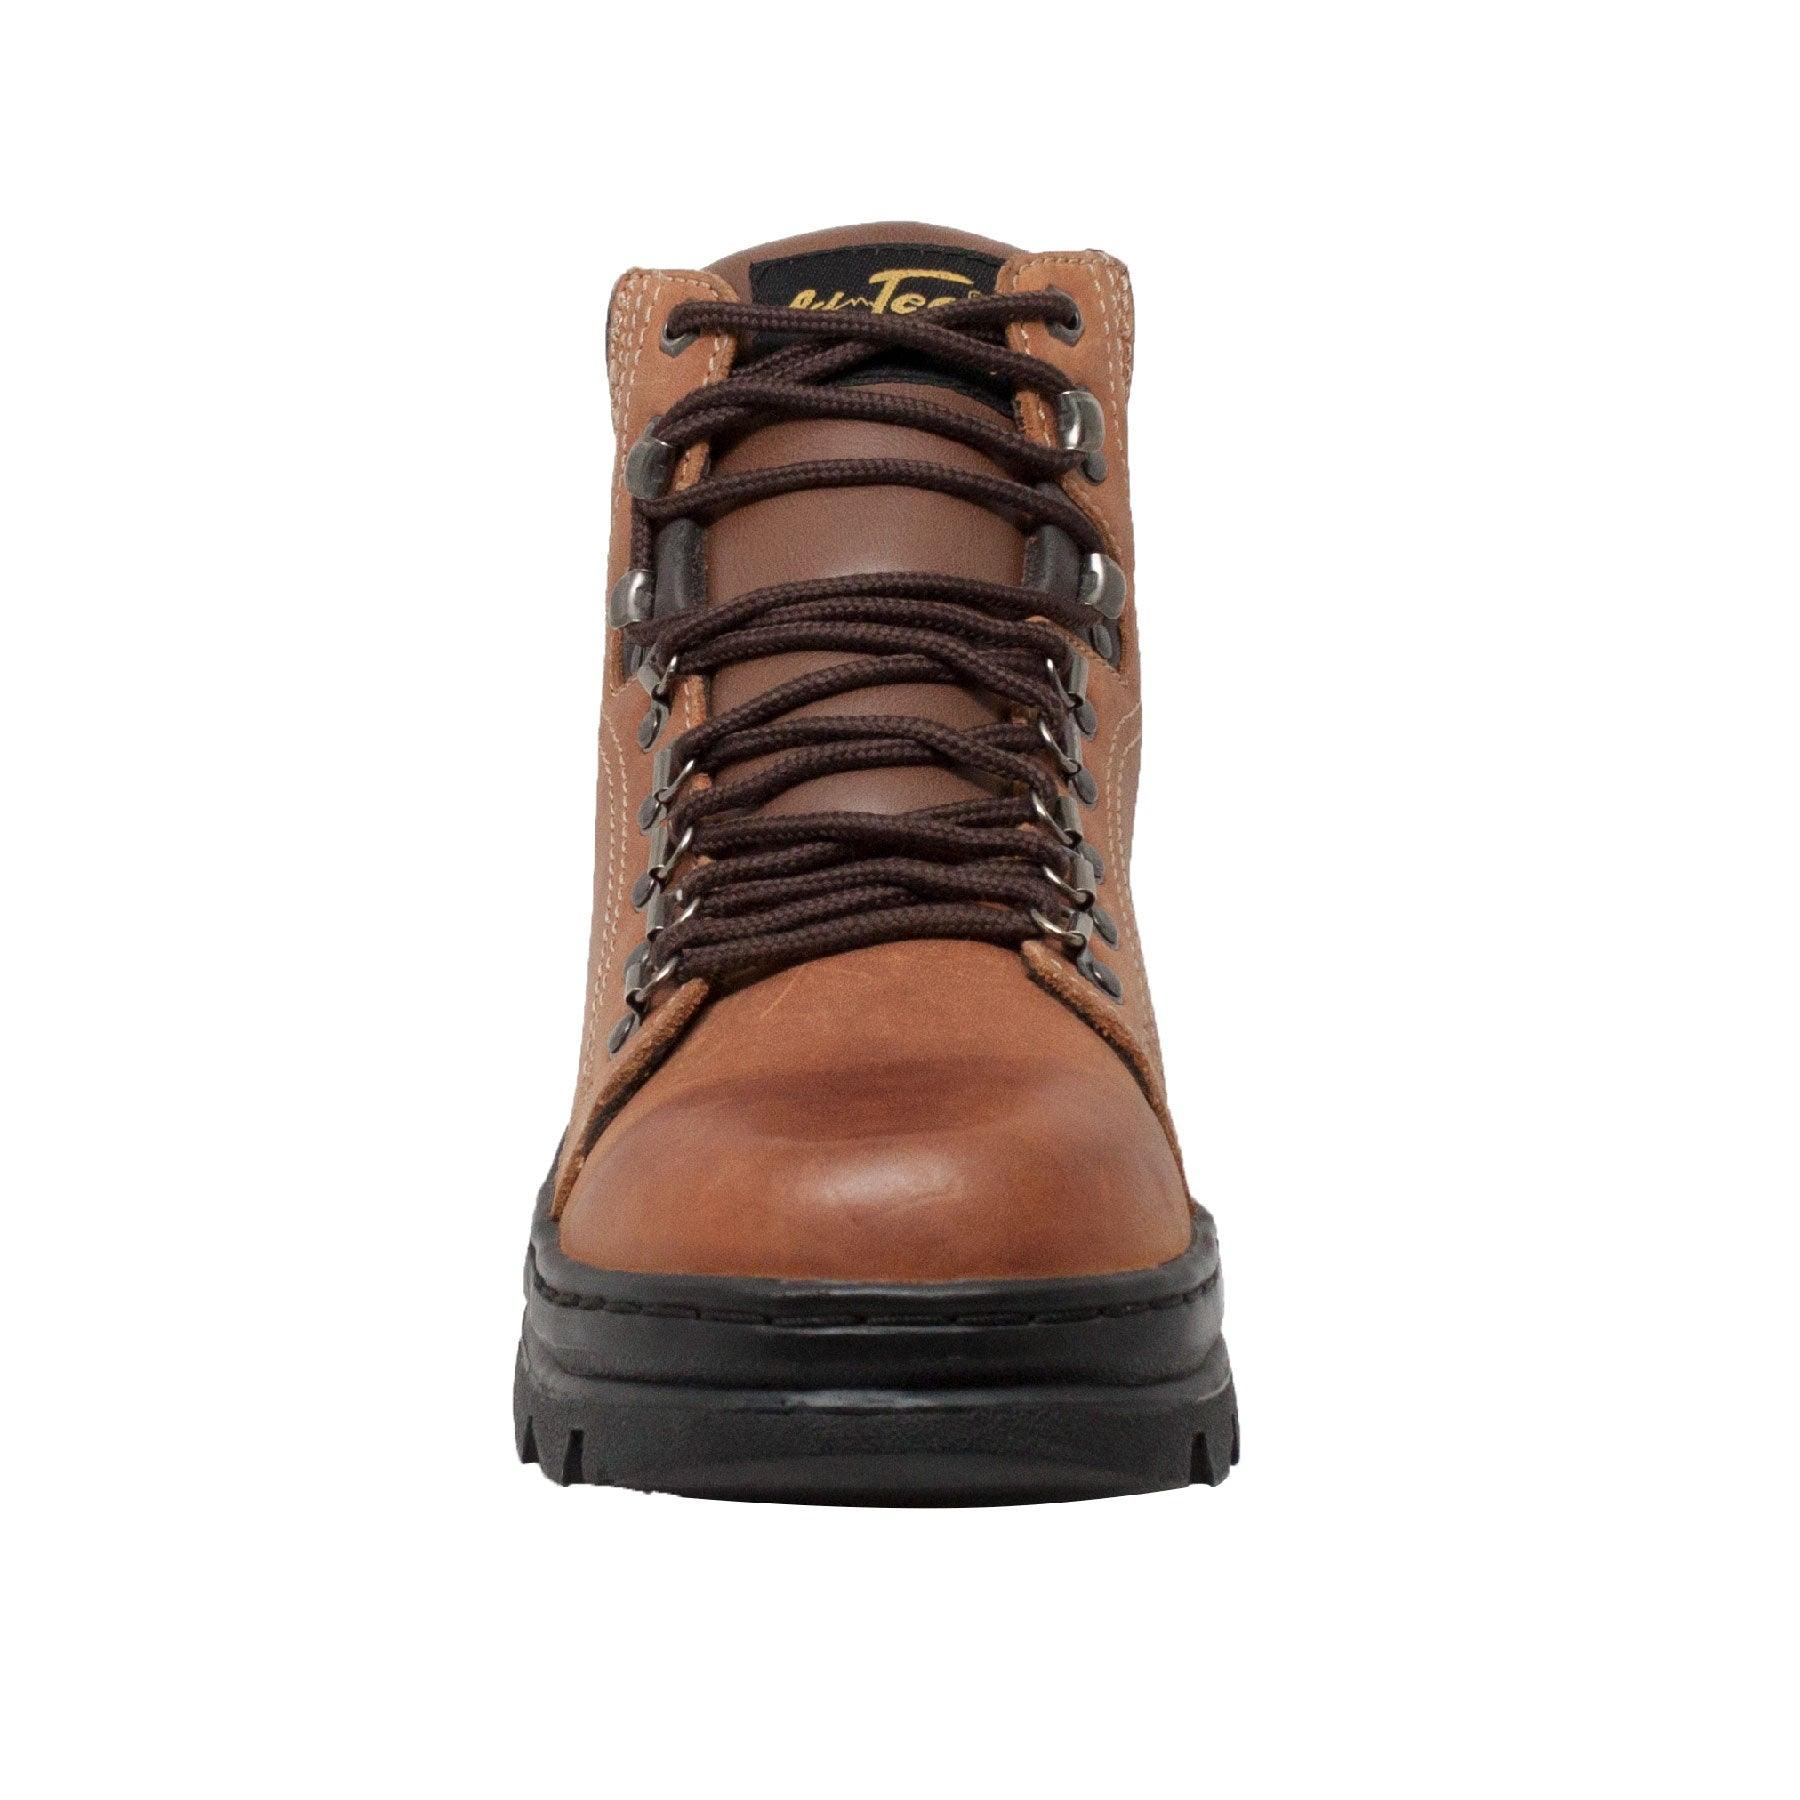 AdTec Men's 6" Hiker Boot Brown - Flyclothing LLC